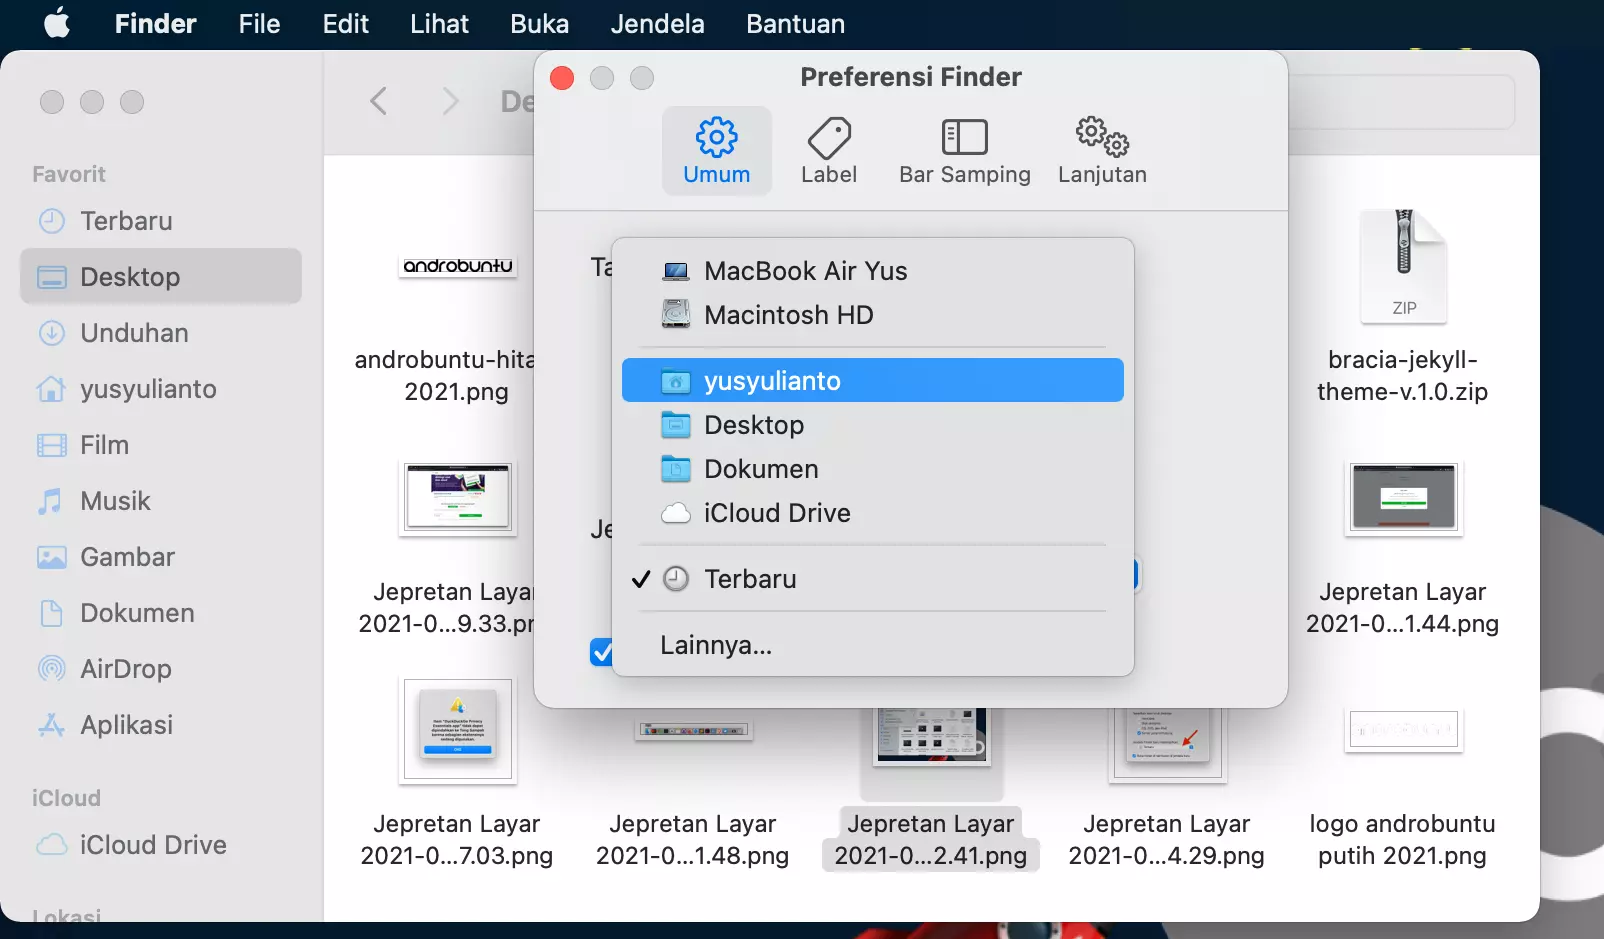 Cara Menyembunyikan Folder Terbaru Pada Finder Mac by Androbuntu 4